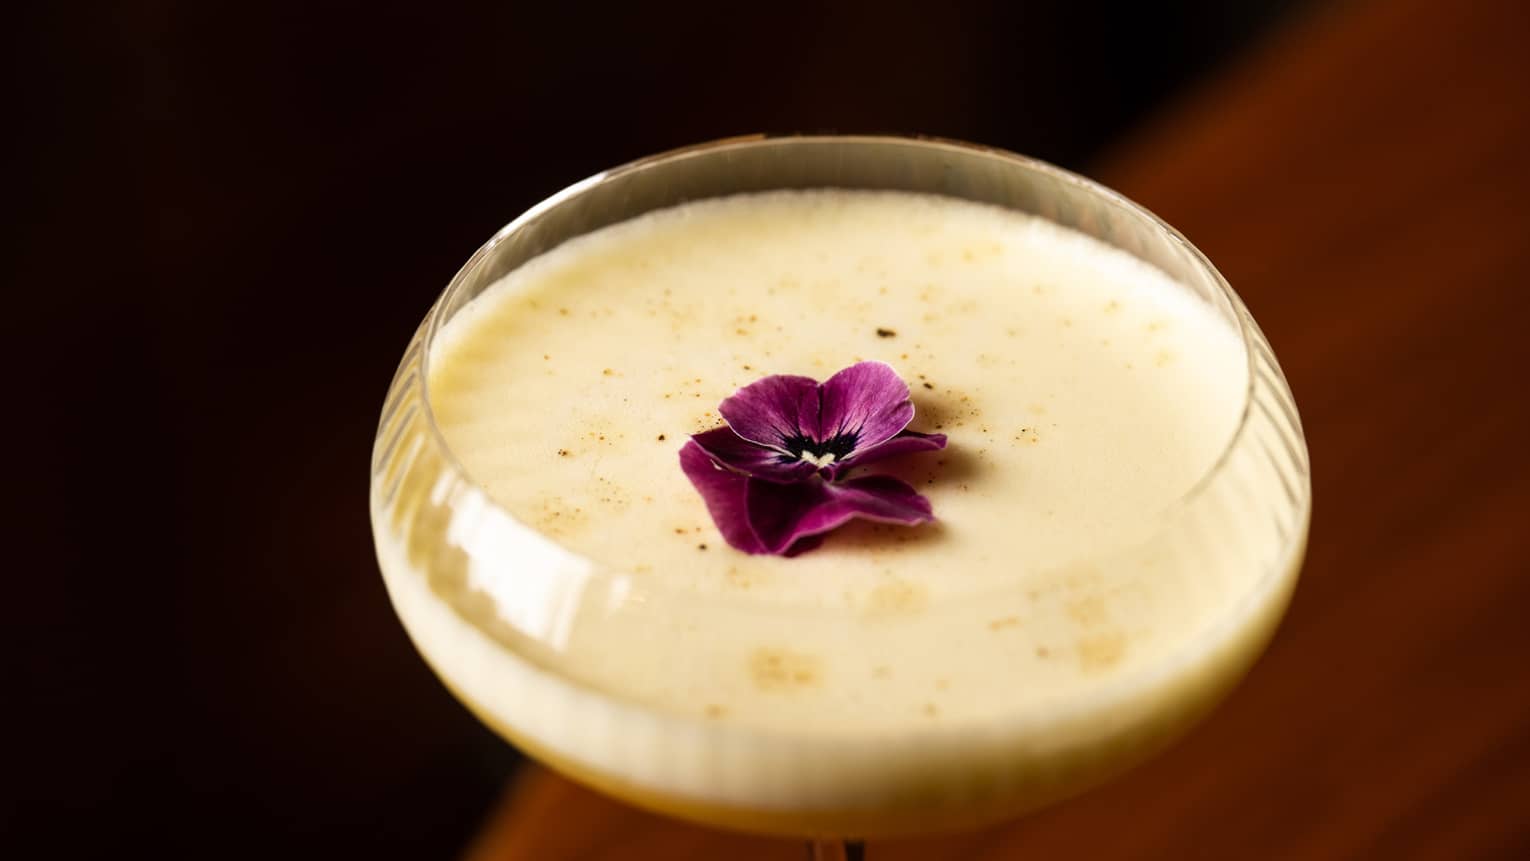 Cocktail with purple flower garnish